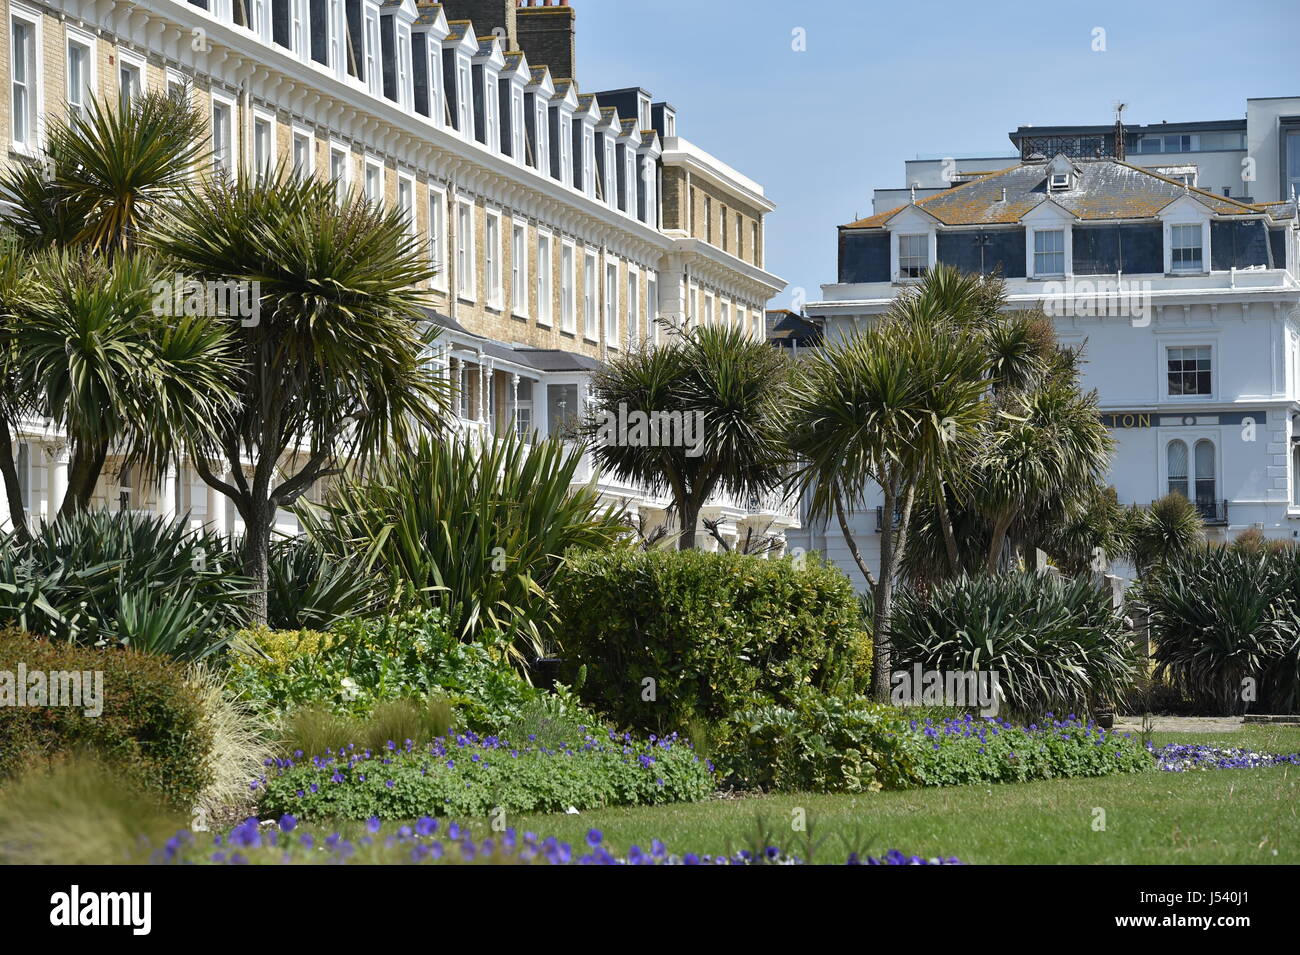 Heene Terrace in Worthing West Sussex UK Stock Photo